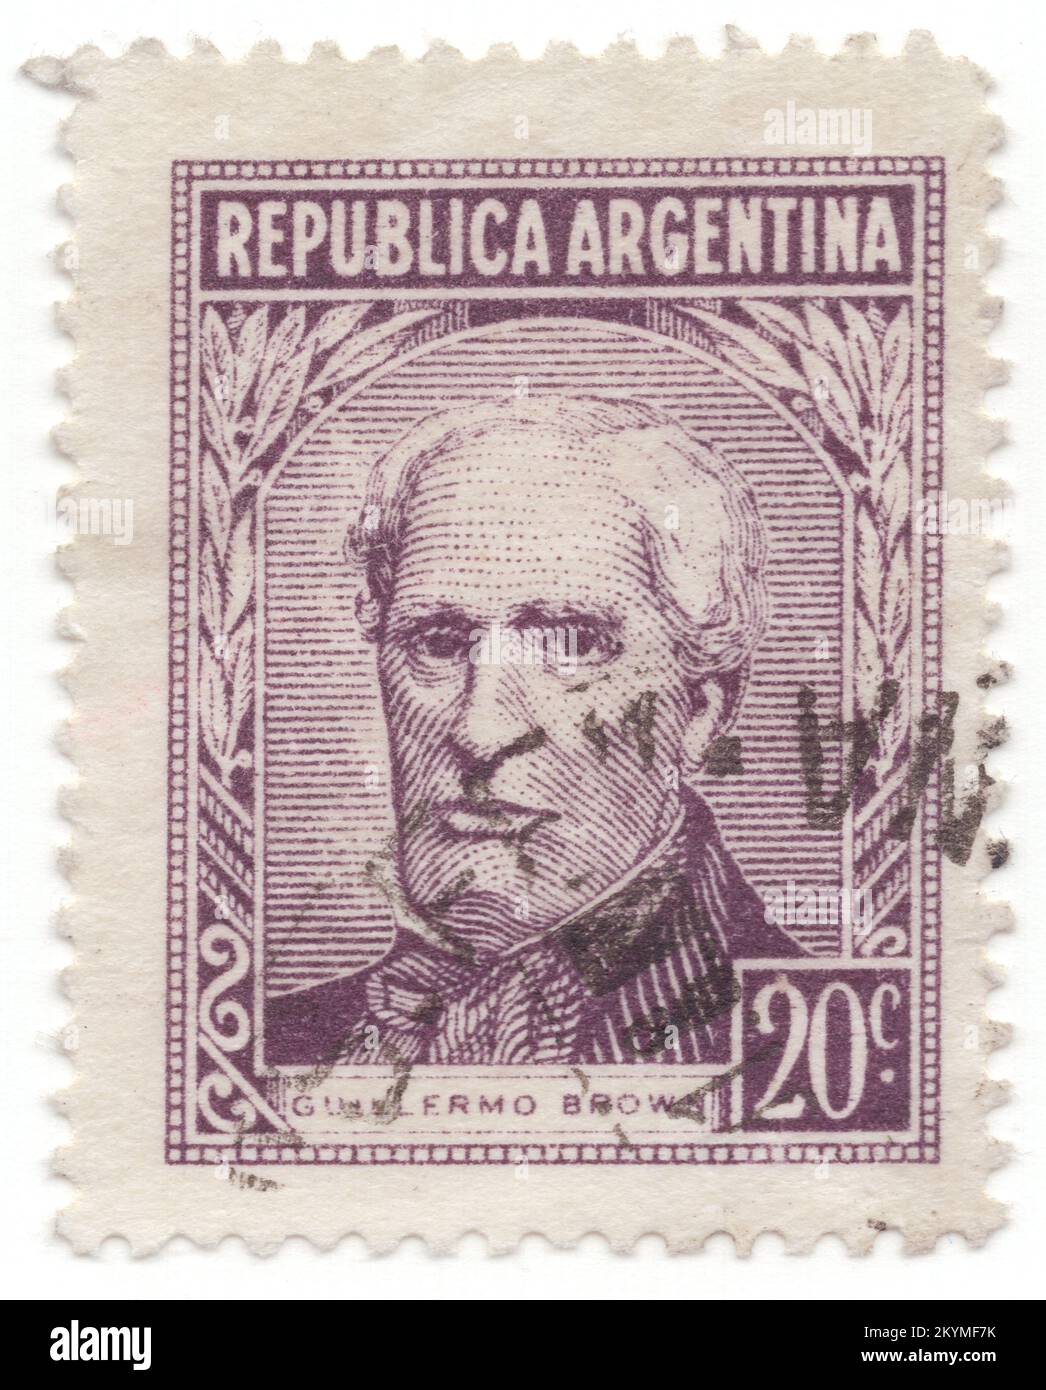 ARGENTINE - 1956: 20 centavos timbre-poste terne violet représentant le portrait de l'amiral Brown. William Brown (également connu en espagnol sous le nom de Guillermo Brown ou Almirante Brown) était un amiral argentin d'origine irlandaise. Les succès de Brown dans la guerre d'indépendance de l'Argentine, la guerre de Cisplatine et le blocus anglo-français du Río de la Plata ont gagné le respect et l'appréciation du peuple argentin, et il est considéré comme l'un des héros nationaux de l'Argentine. Créateur et premier amiral des forces maritimes du pays, il est communément connu comme le « père de la Marine Argentine » Banque D'Images